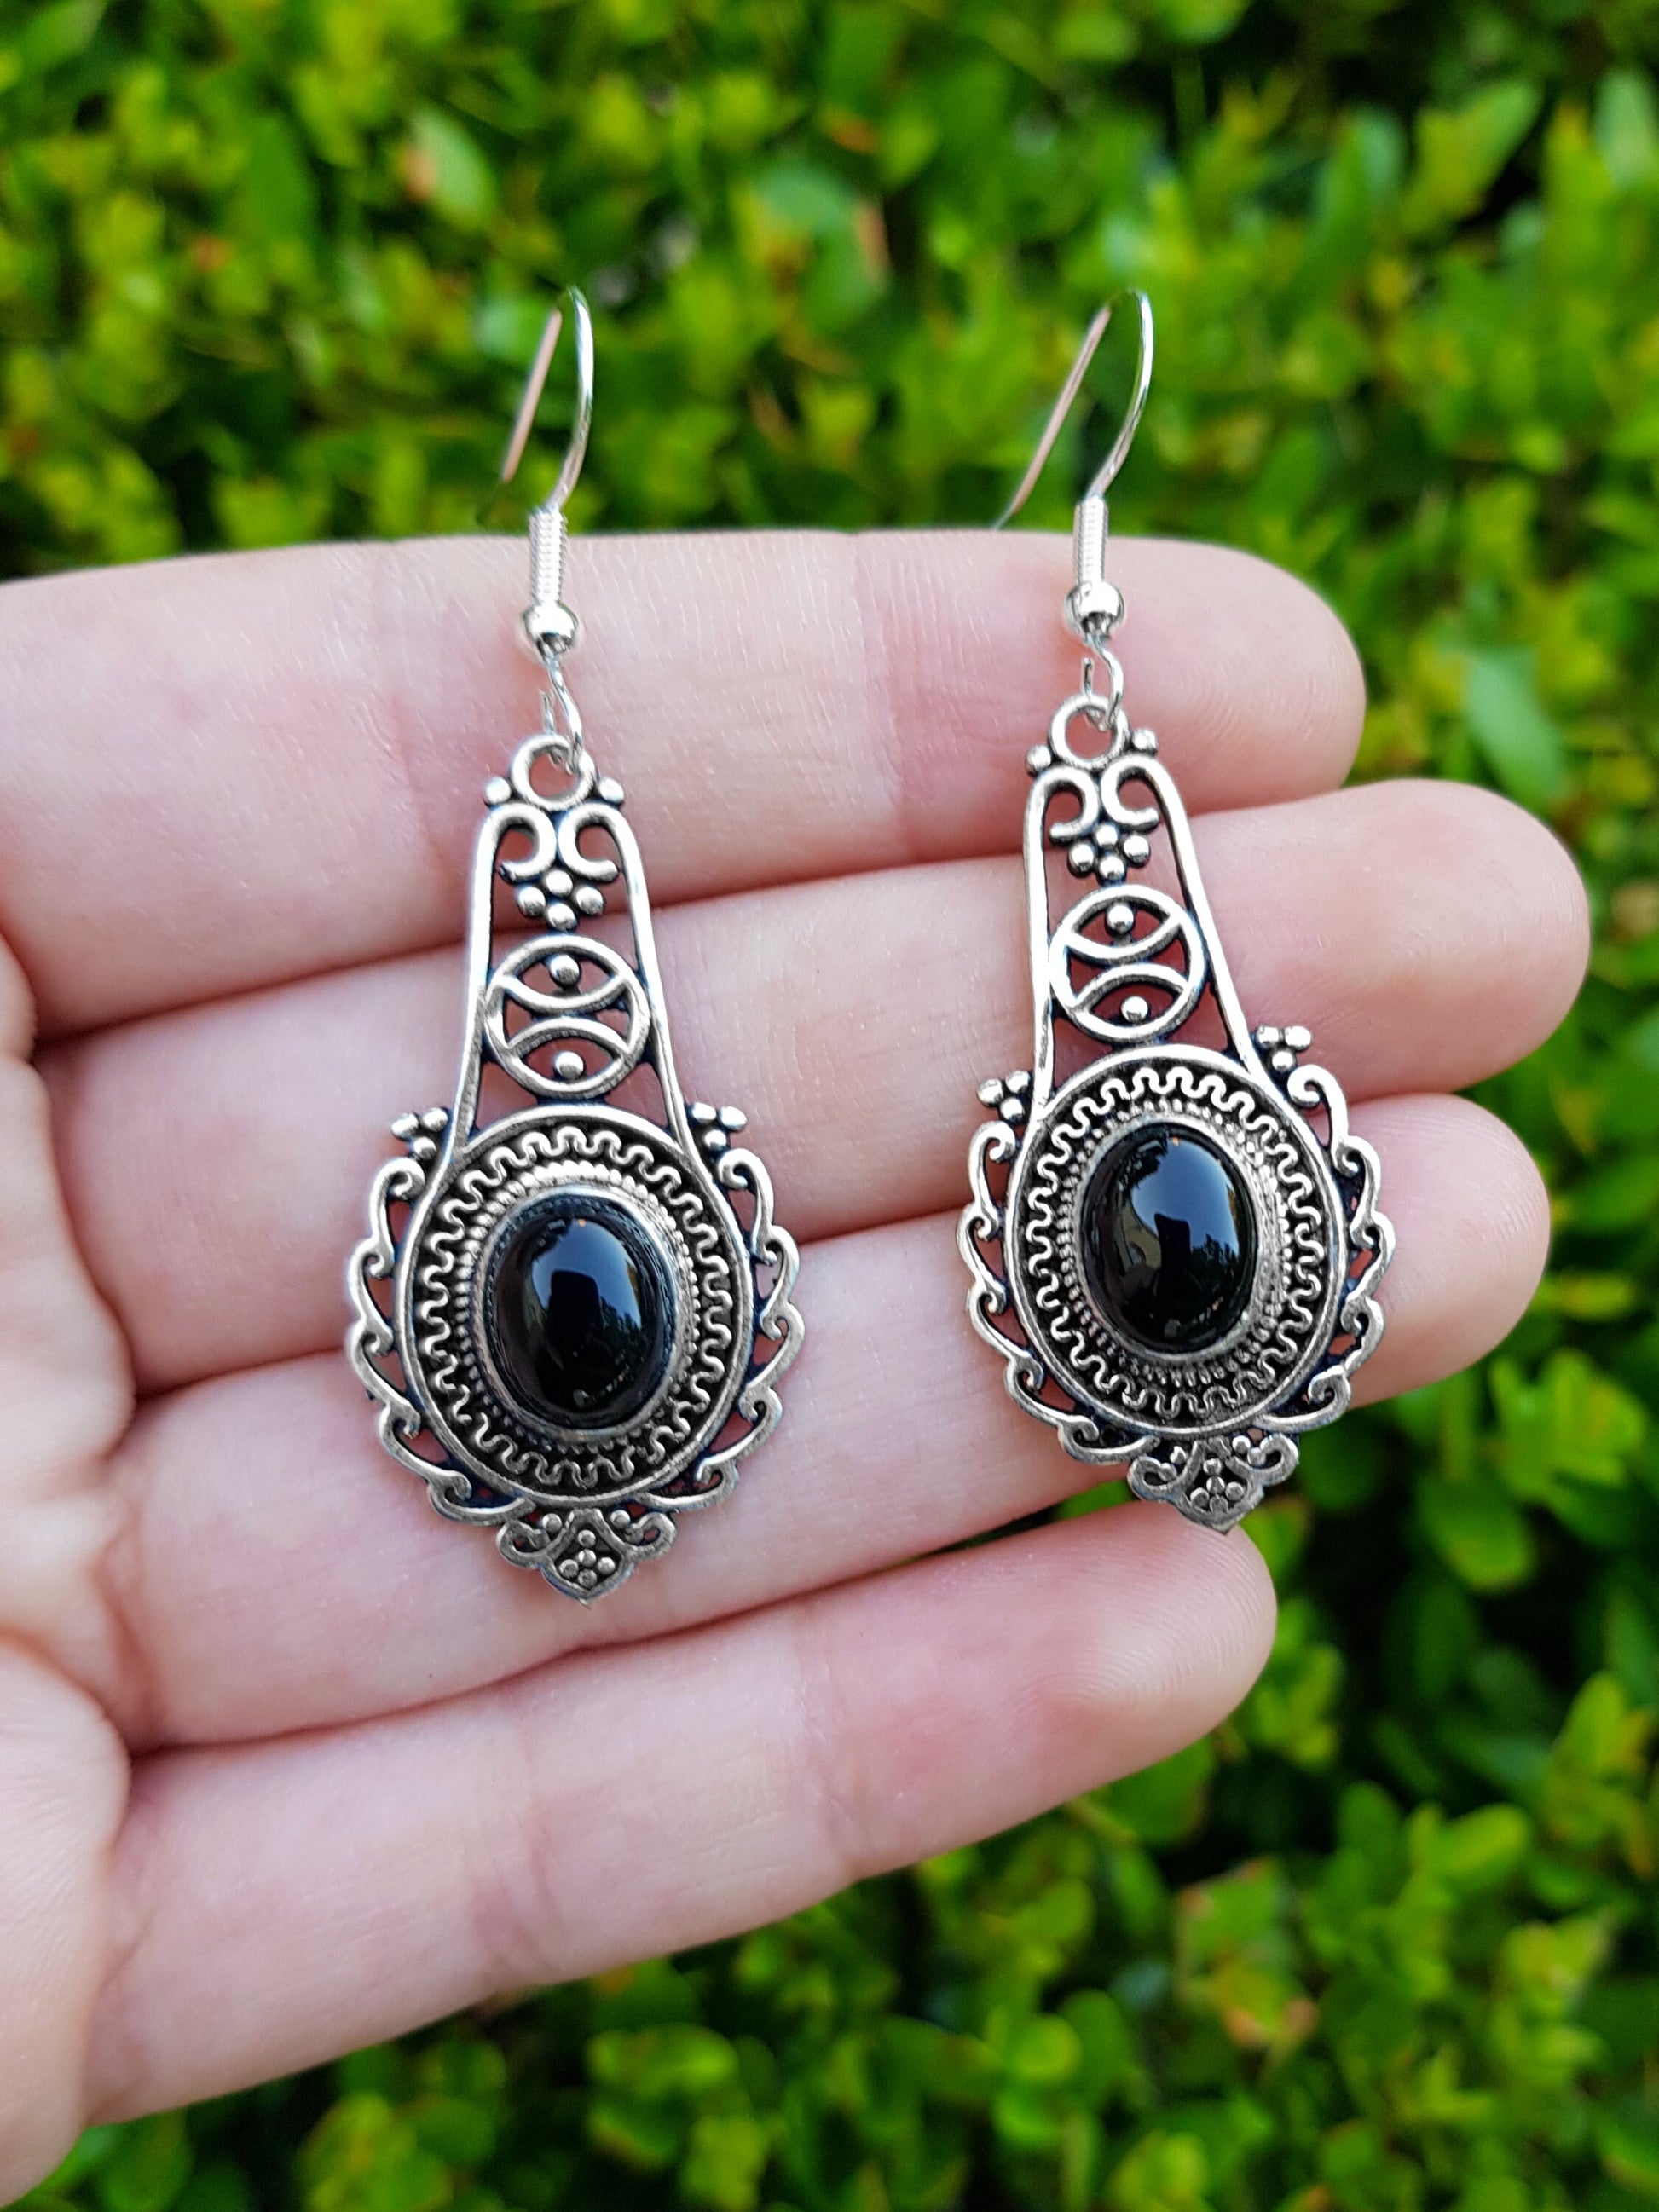 Black Onyx Earrings In Sterling Silver Dangle Statement Earrings Boho Ethnic Earrings Gem Stone Earrings GypsyJewelry